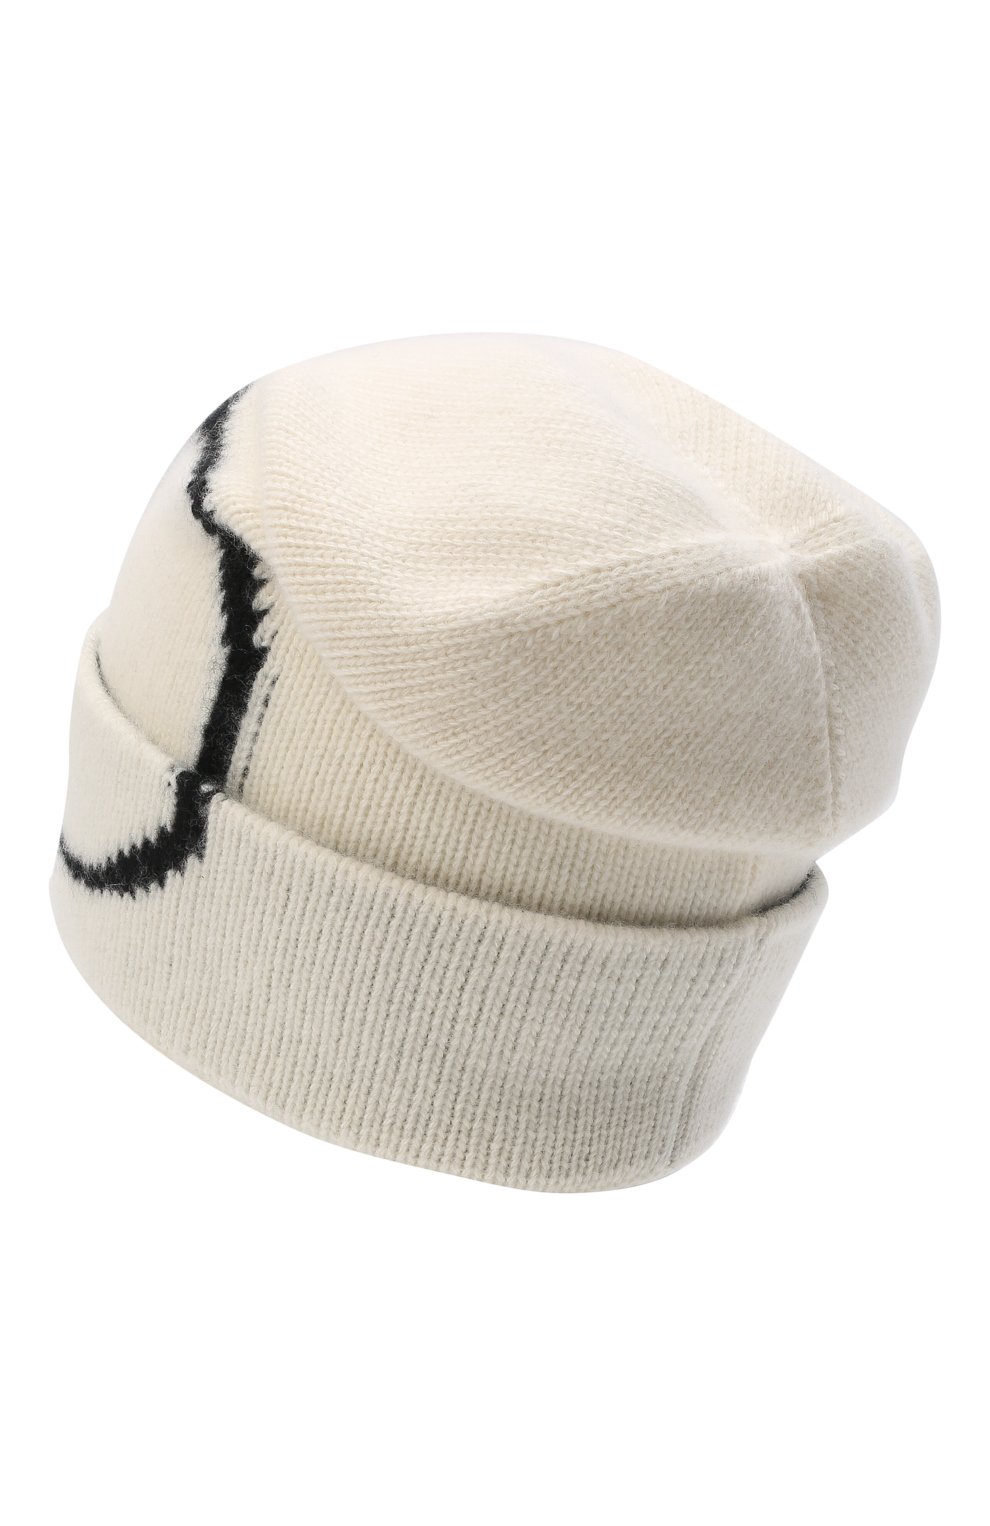 Мужская шапка из шерсти и кашемира VALENTINO кремвого цвета, арт. WY0HB00Y/RAI | Фото 2 (Материал: Текстиль, Кашемир, Шерсть; Кросс-КТ: Трикотаж)